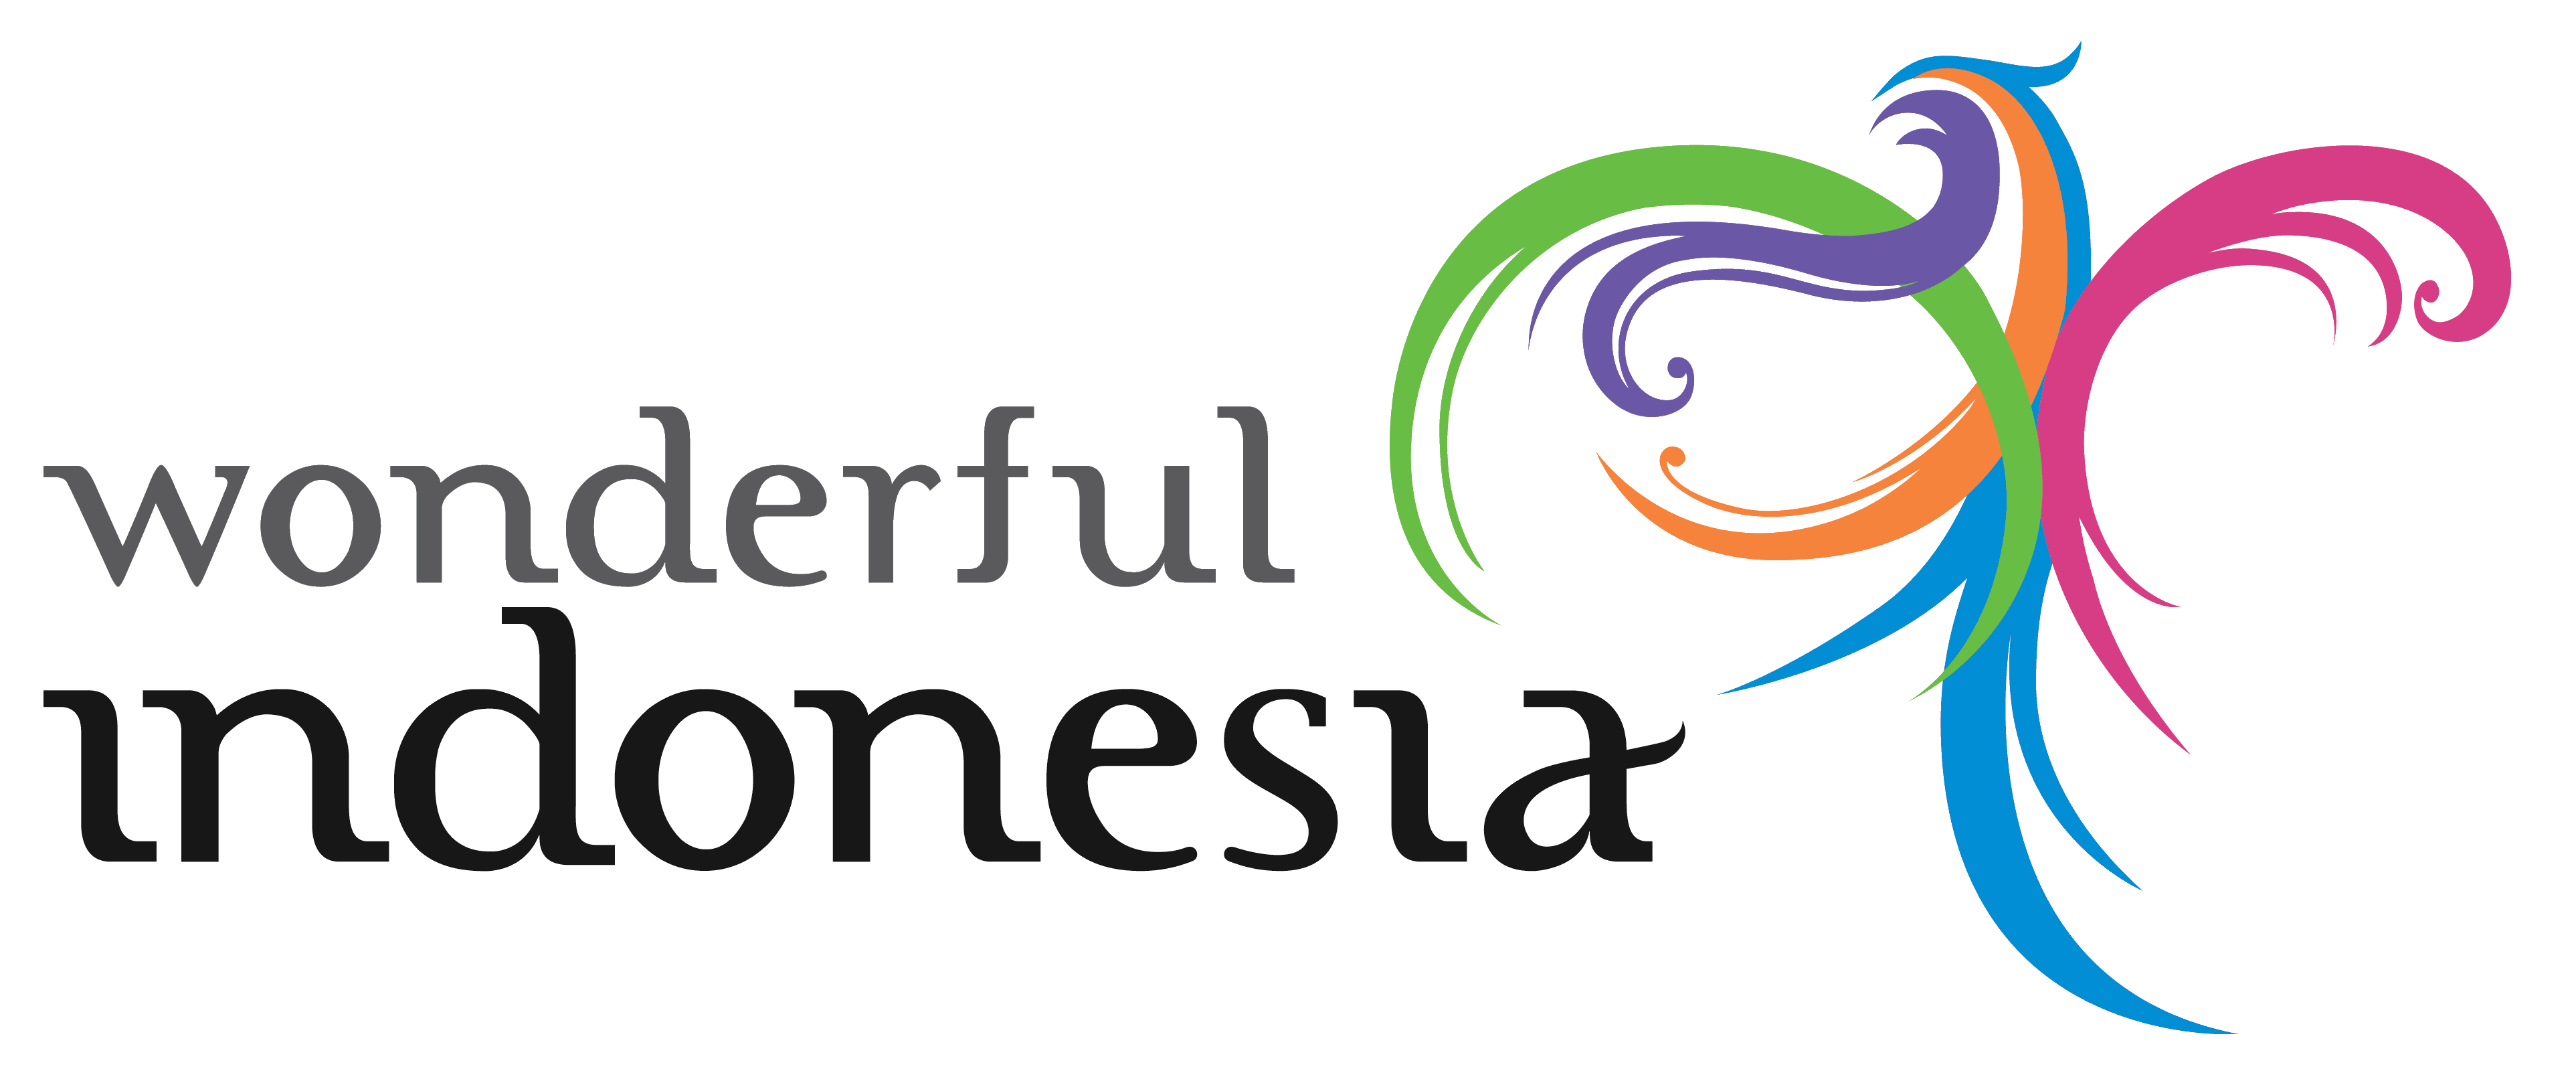 Wonderful Logo - Wonderful Indonesia